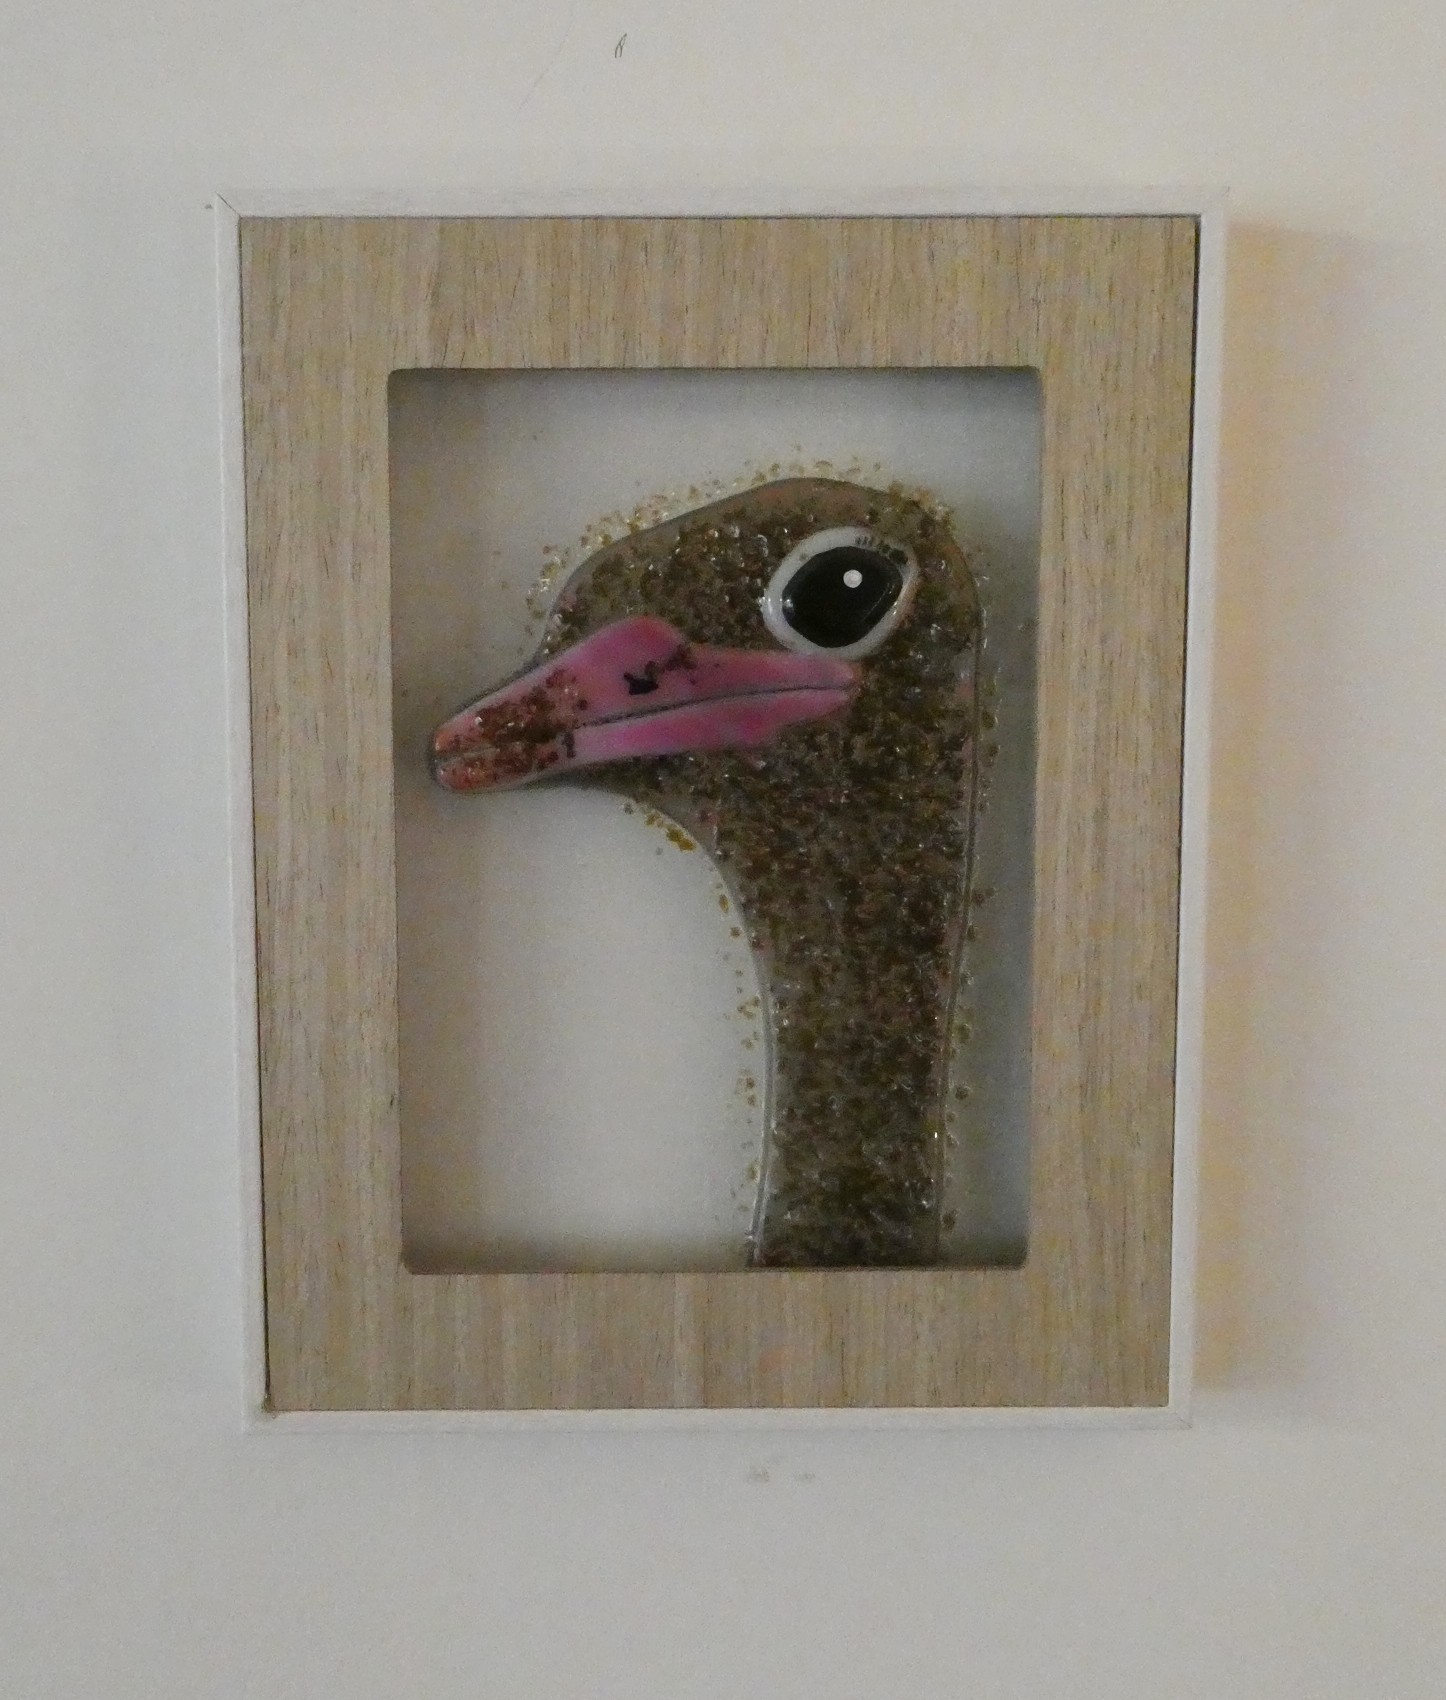 Vogels over de hele wereld, uit serie vogels gemaakt door glaskunstenaar Josette Meeuwis, Glasatelier de Spin